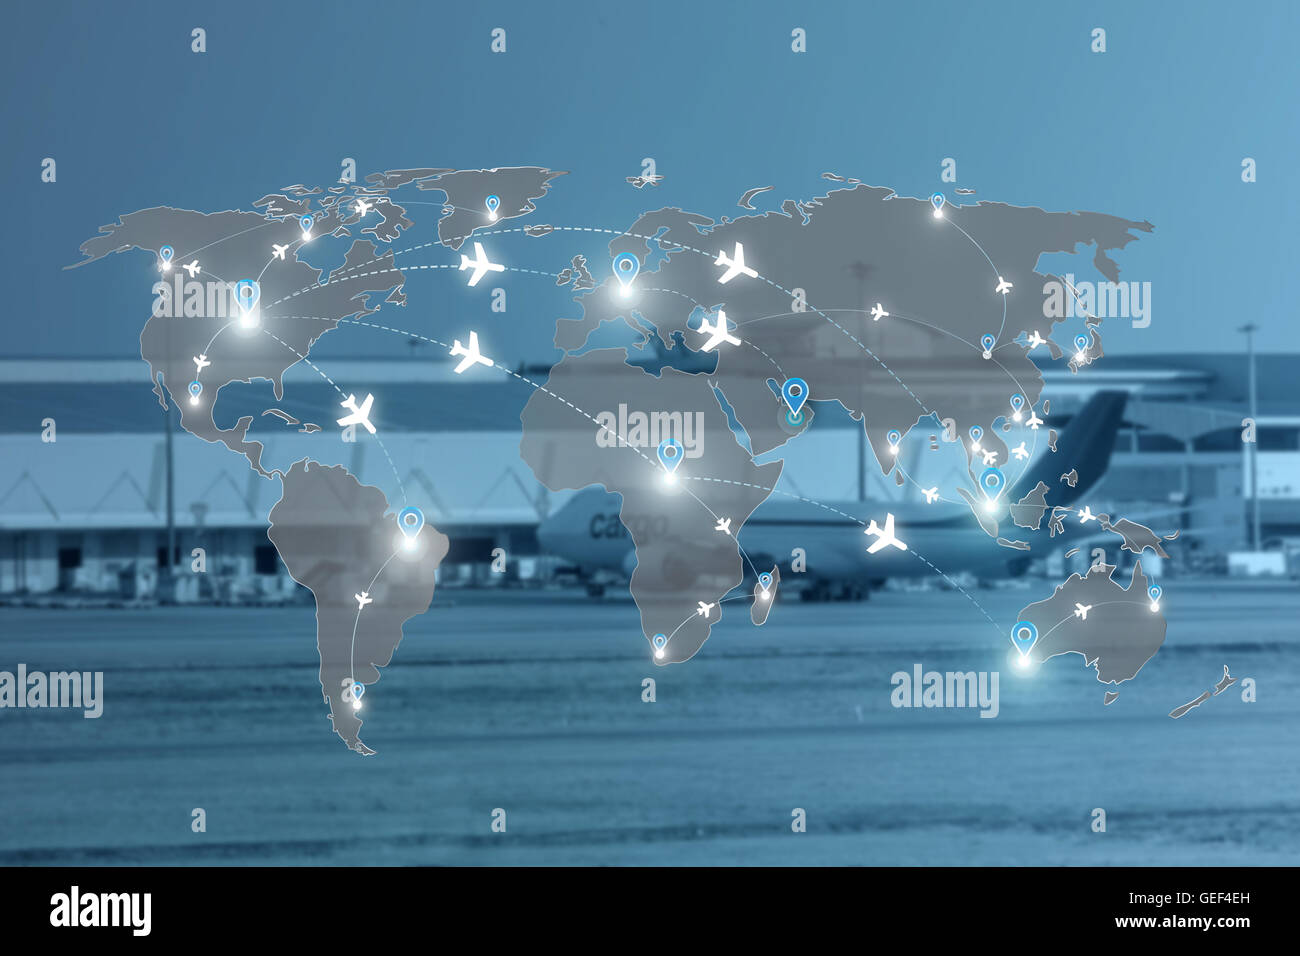 Mapa de rutas de vuelo de aviones para uso de la red global de viajes, importación, exportación, logística el concepto de red. Foto de stock